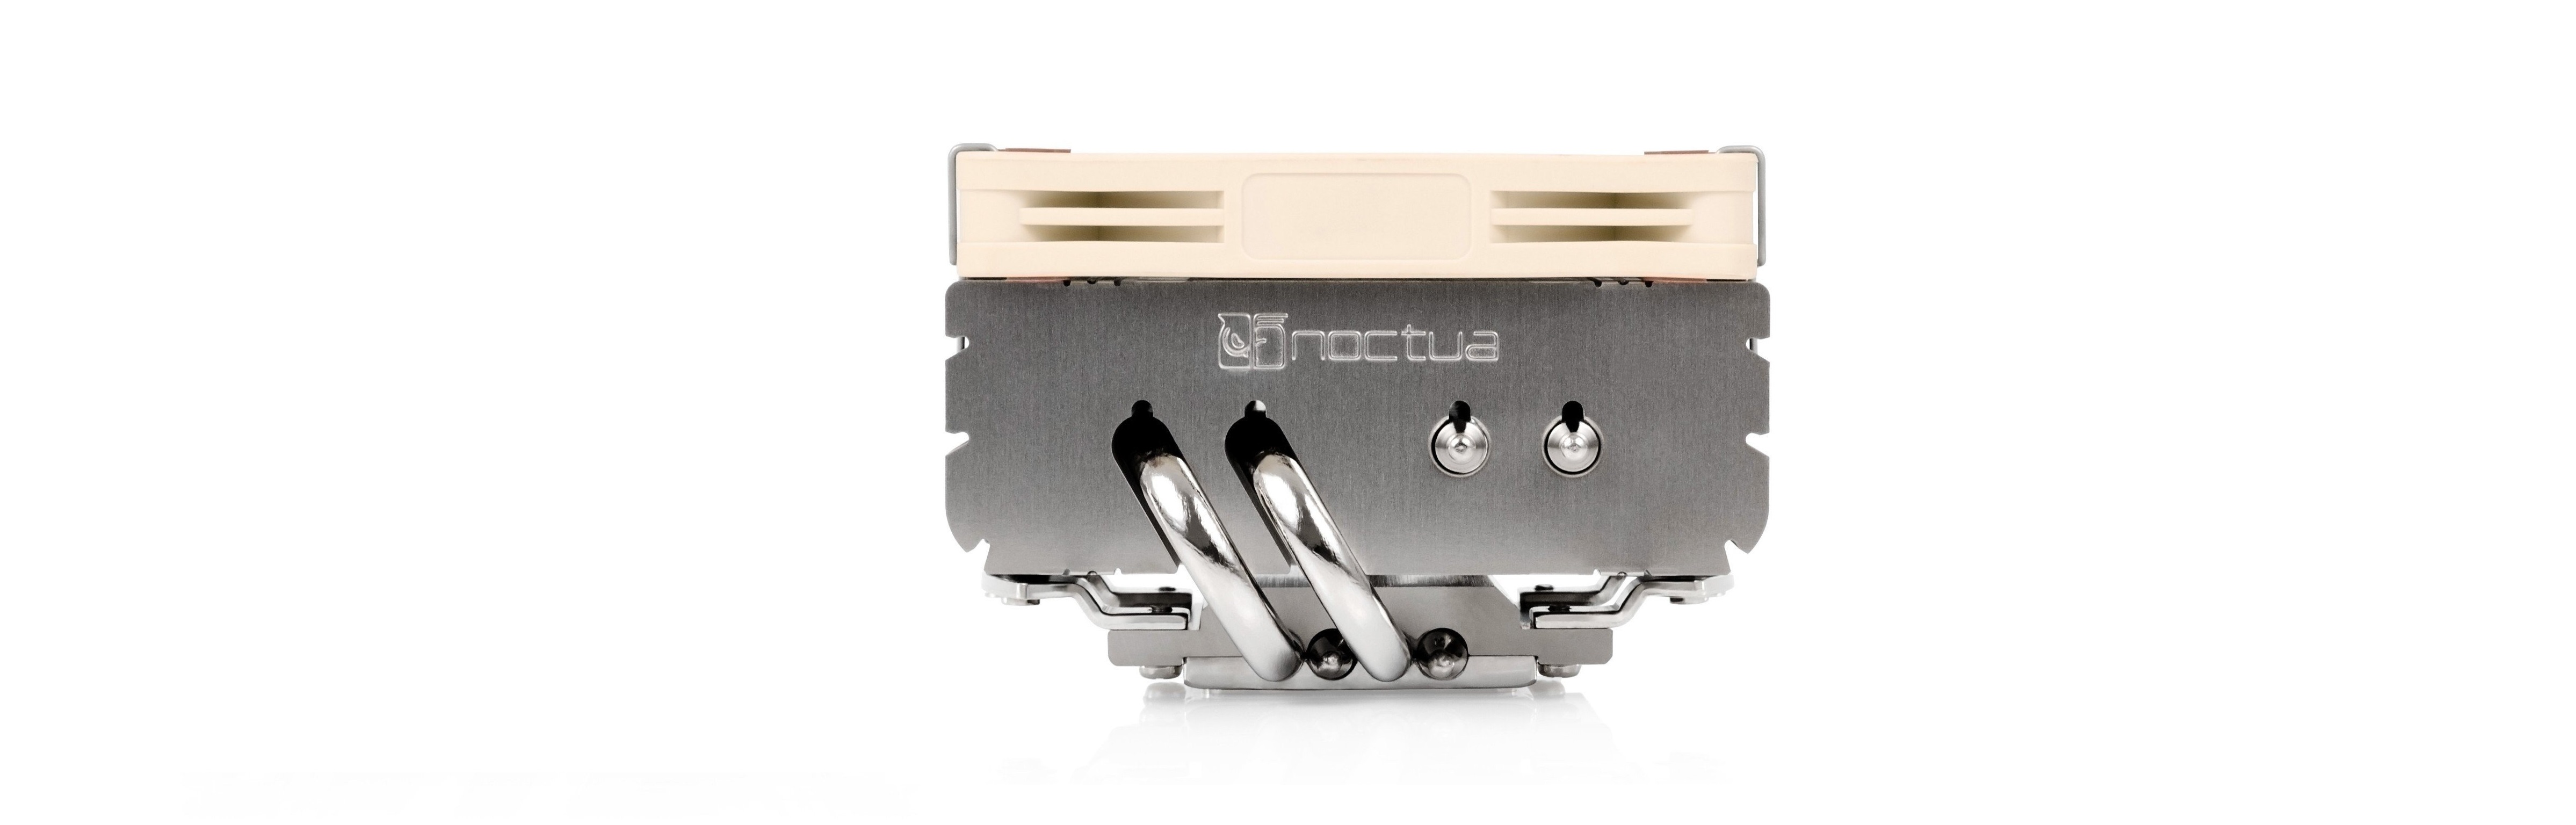 Tản nhiệt khí CPU Noctua NH-L9x65 có thiết kế nhỏ gọn với chiều cao 65mm và bốn ống dẫn nhiệt giúp cho việc dẫn khí và làm mát nhanh hơn